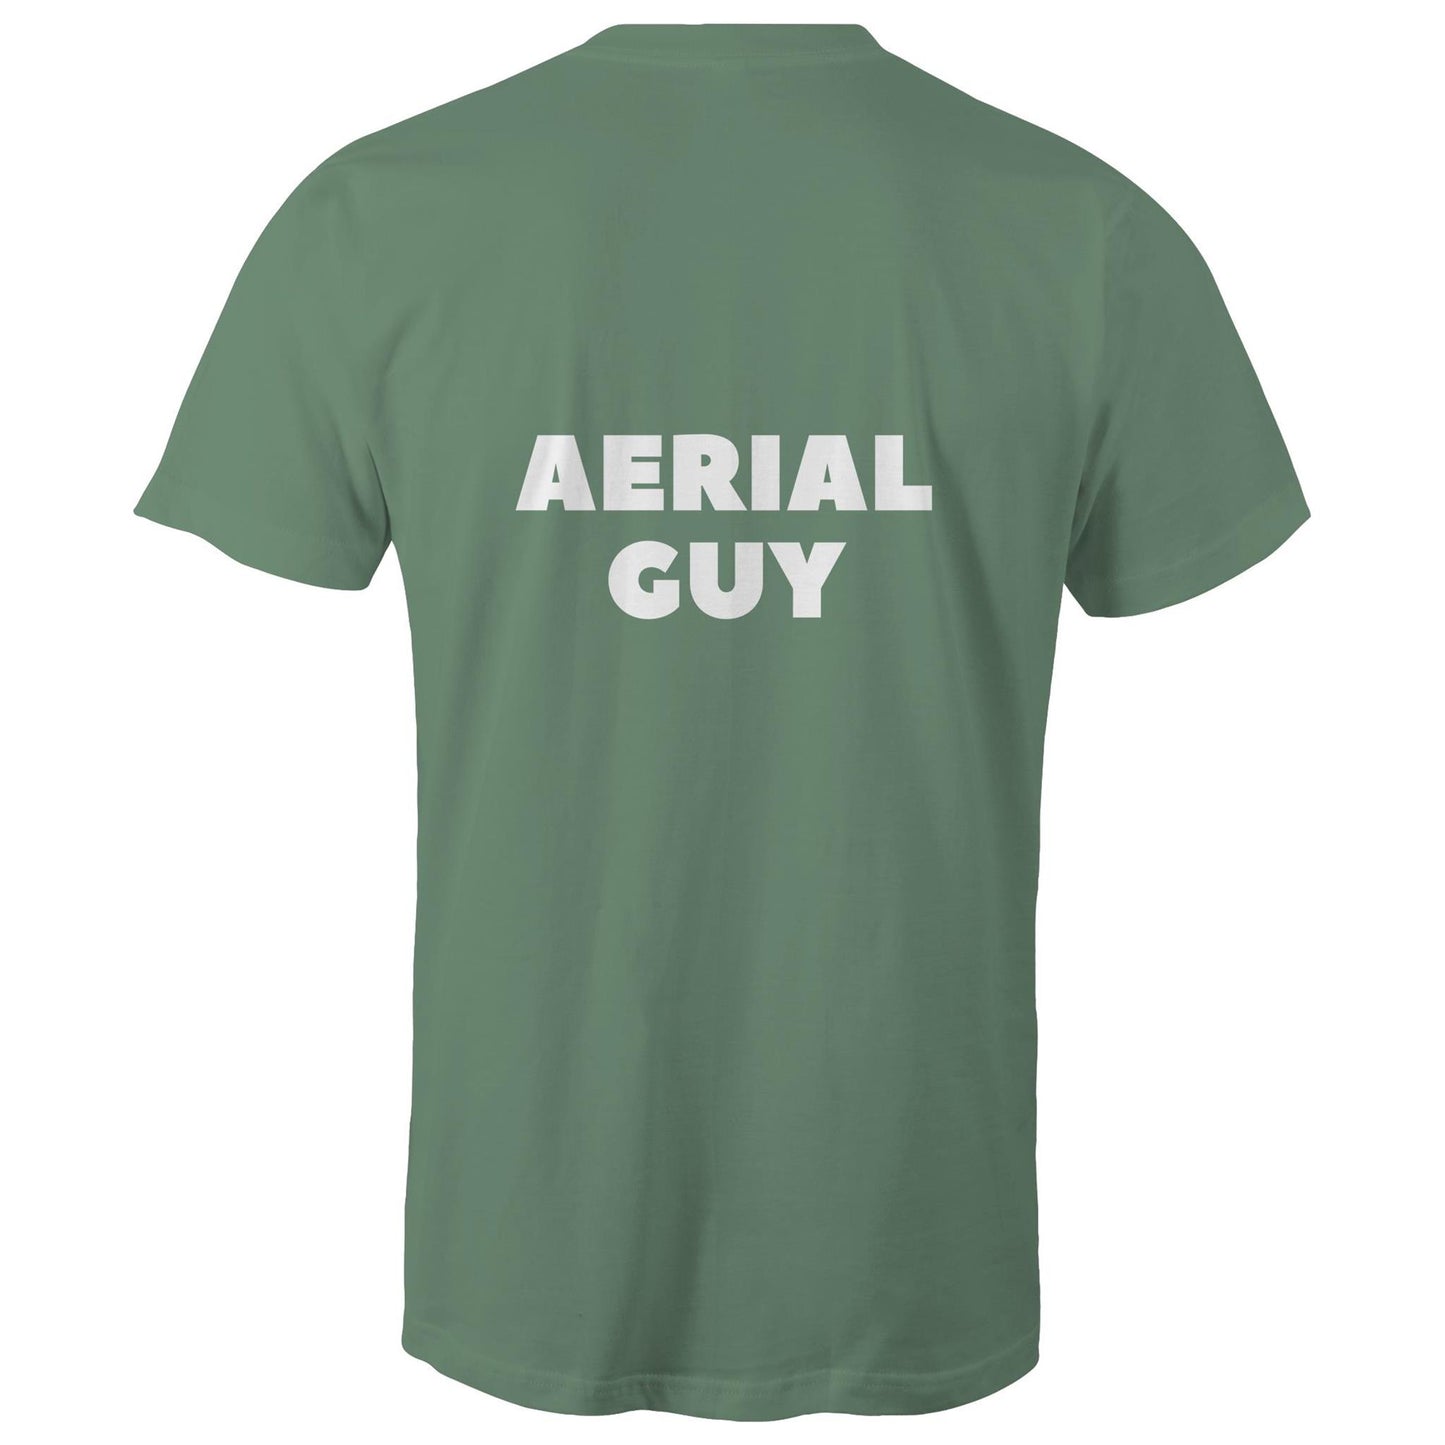 AERIAL GUY - Mens T-Shirt